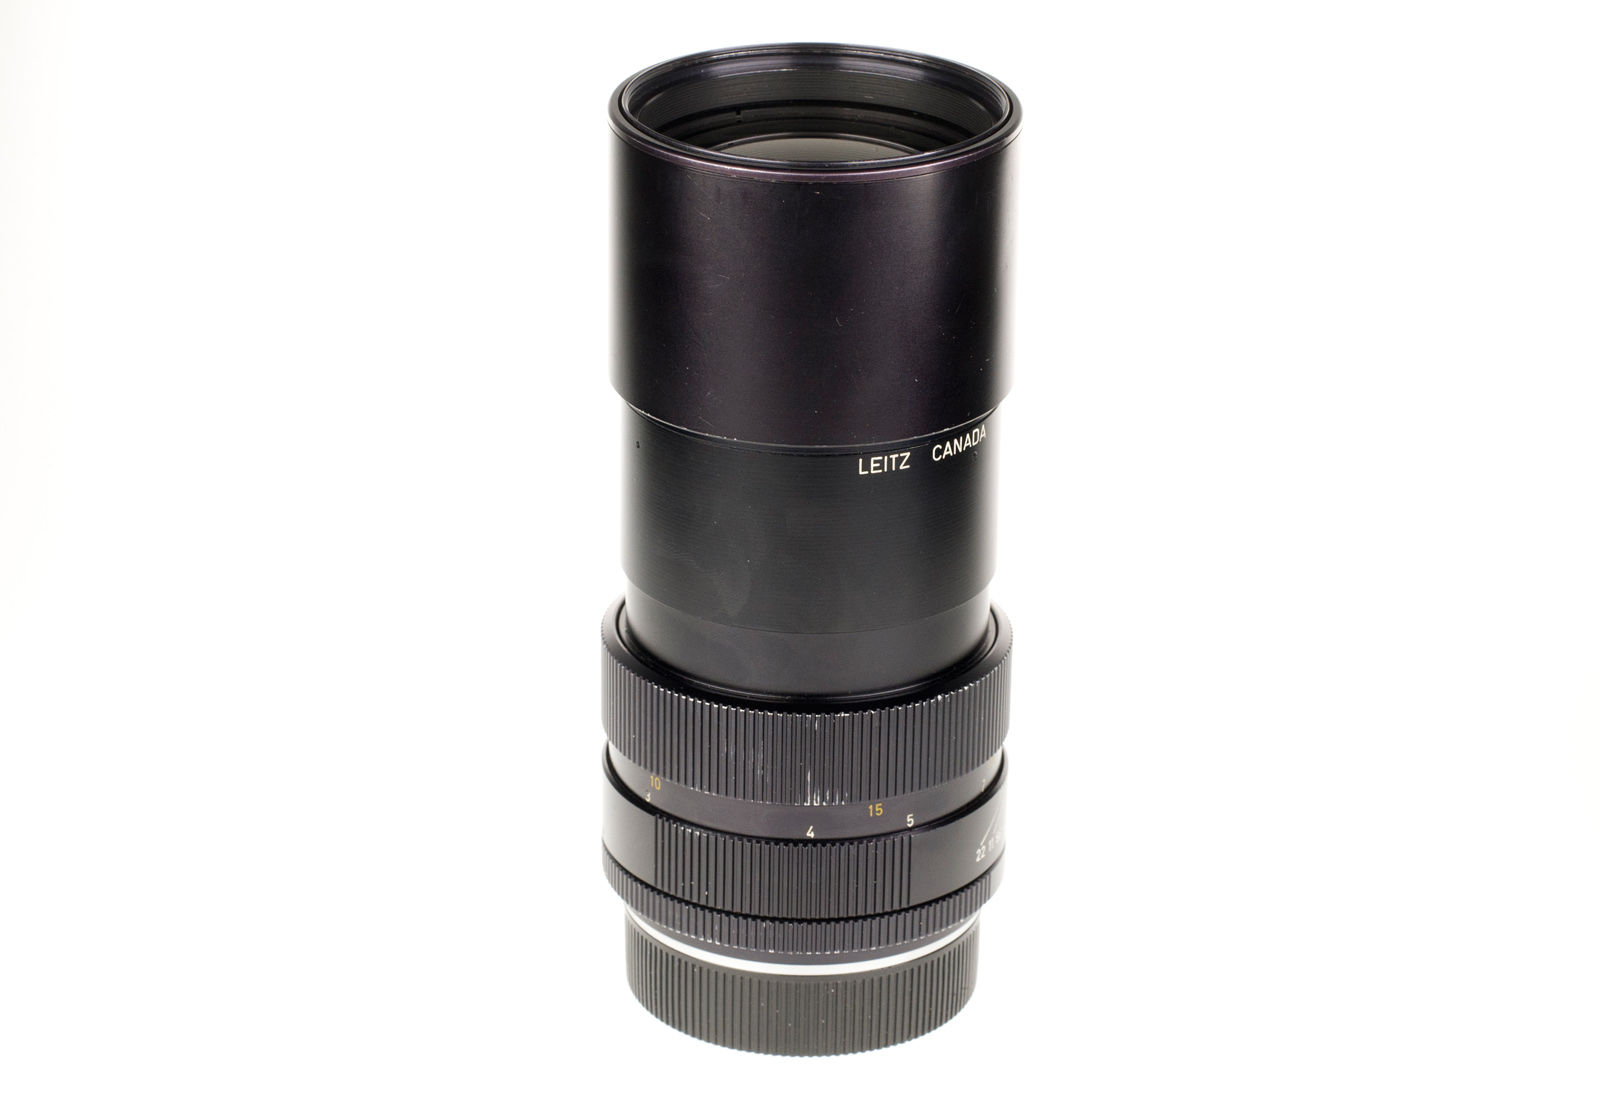 Leica APO-Telyt-R 1:3,4/180mm, schwarz 11240